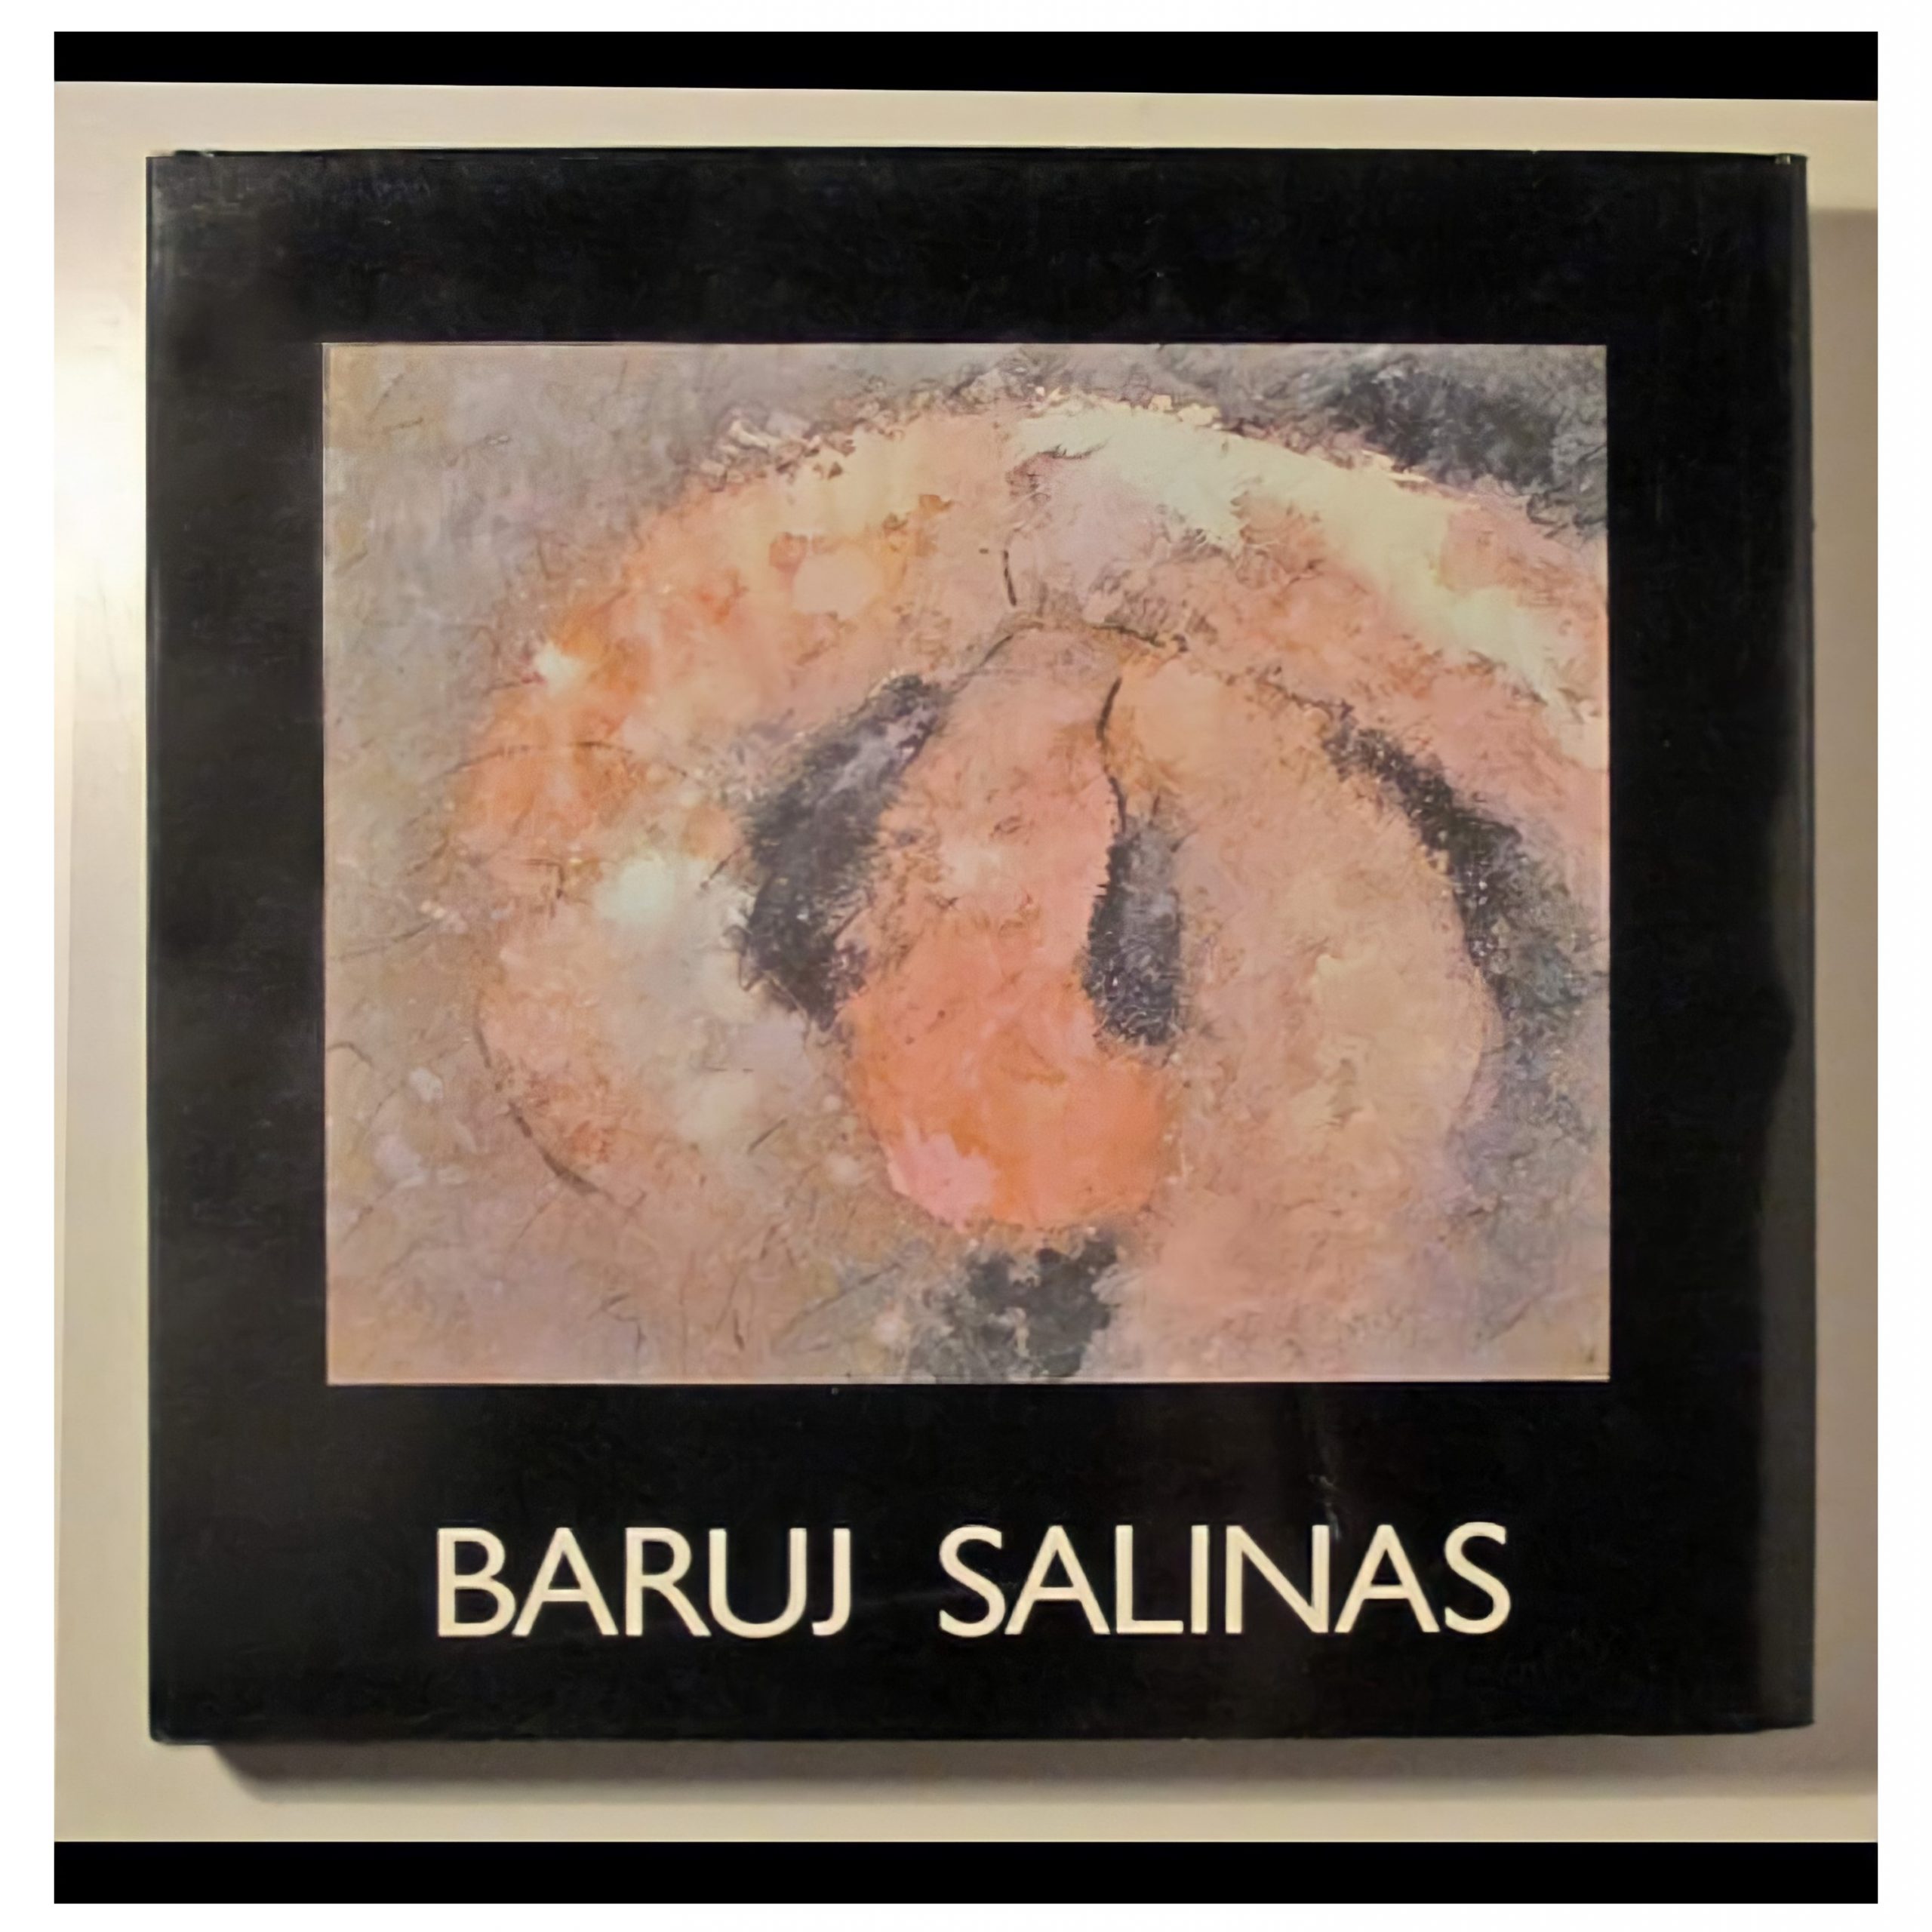 Baruj Salinas (1979)